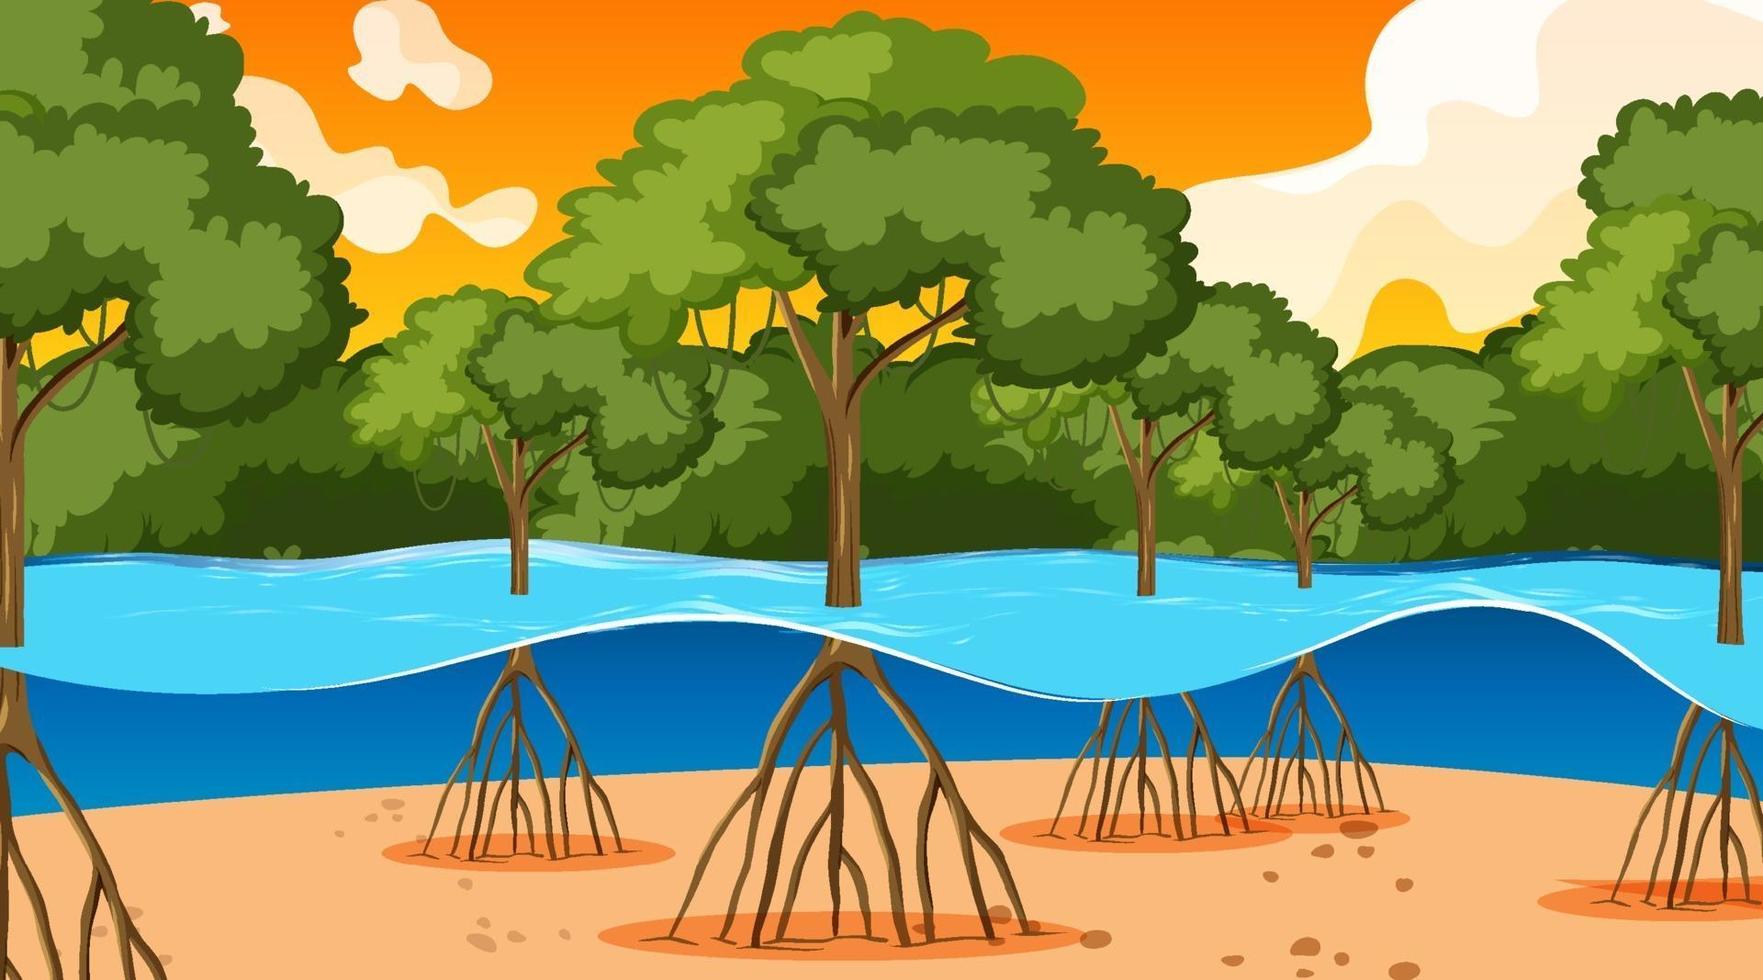 cena da natureza com floresta de mangue ao pôr do sol no estilo cartoon vetor